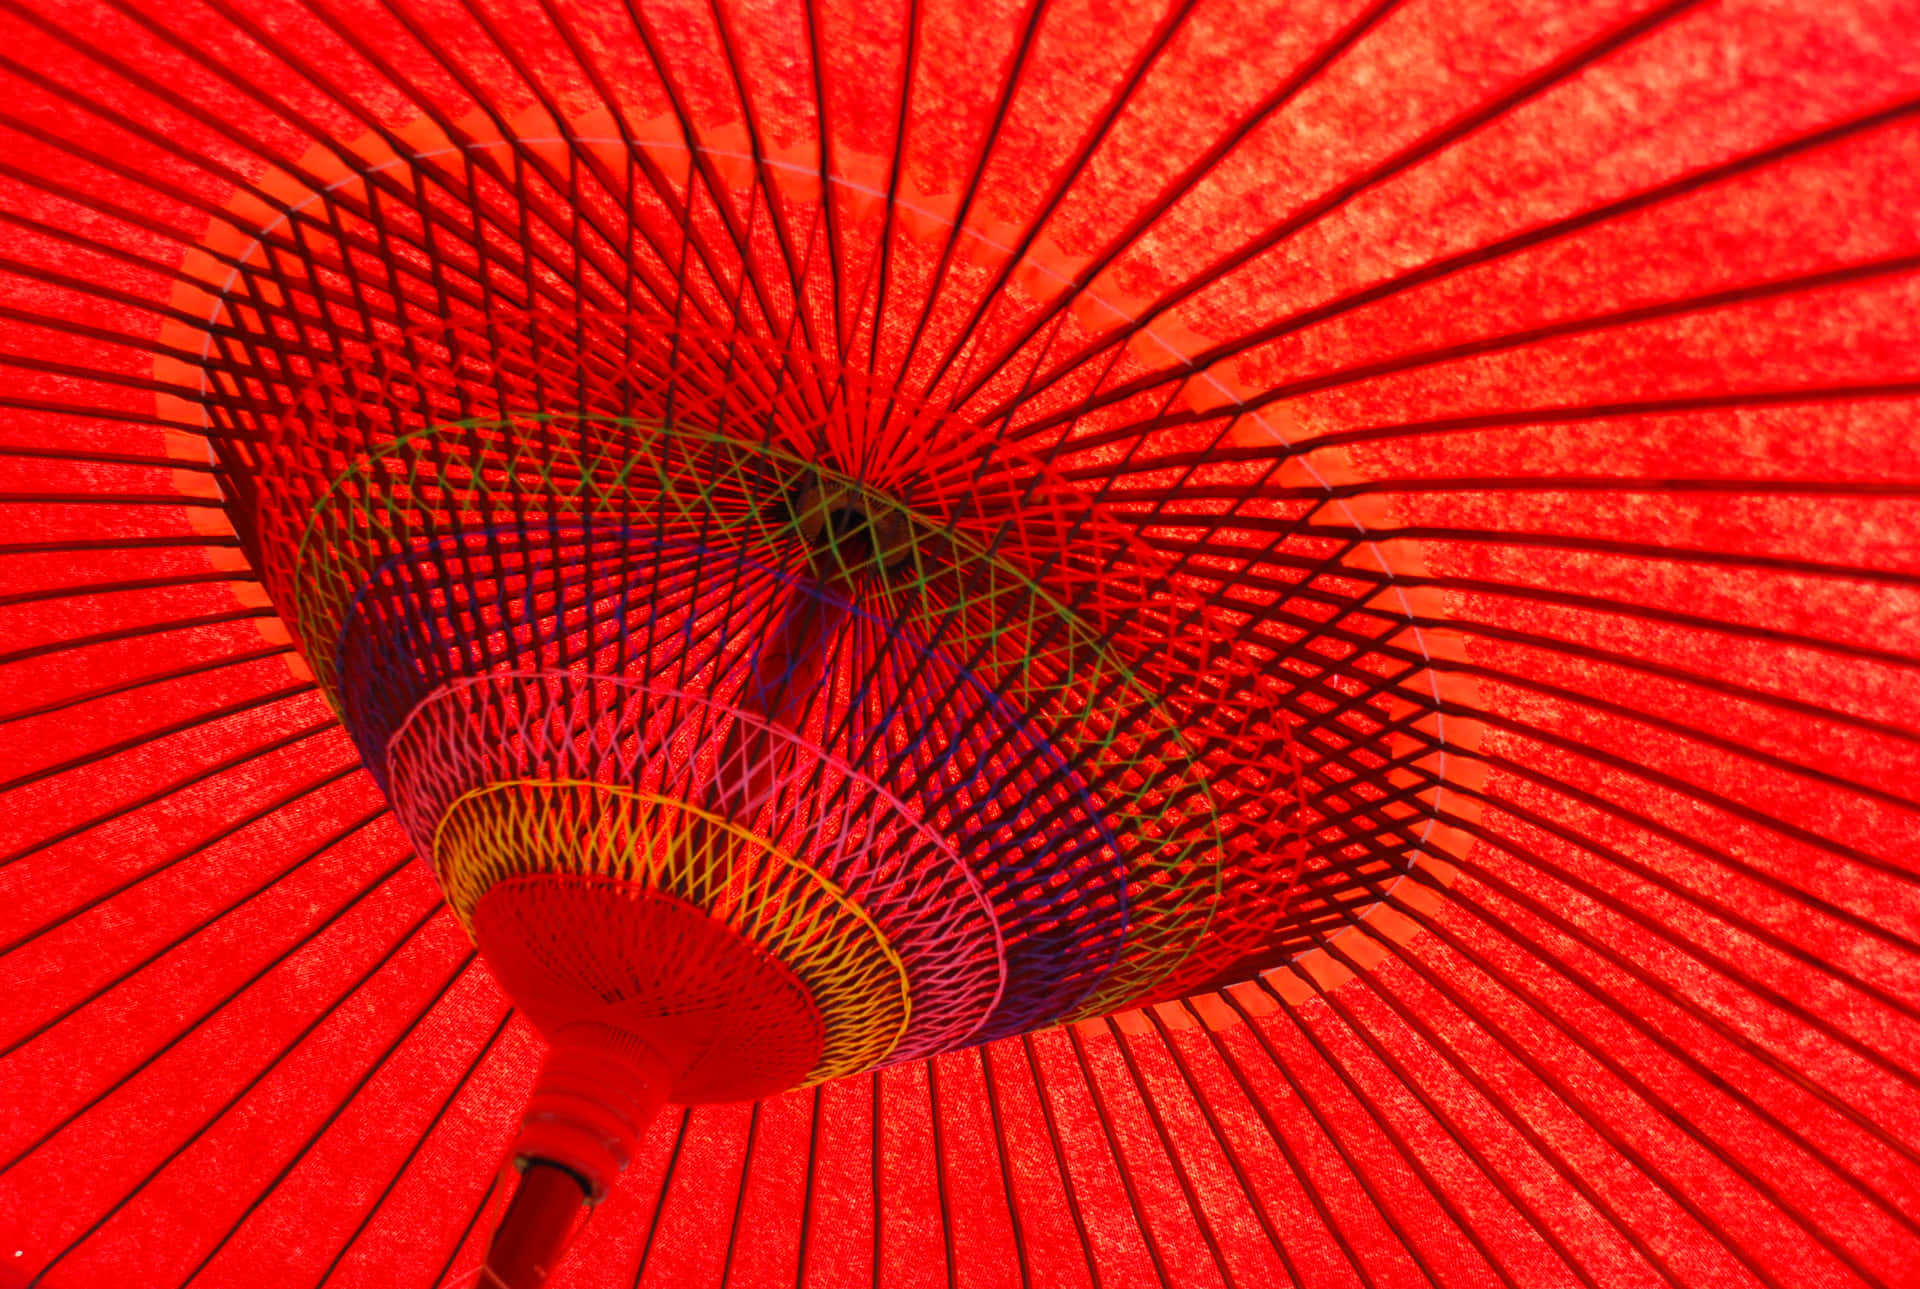 Vistanoturna Japonesa Encantadora Com Lanternas Vermelhas Iluminando A Rua. Papel de Parede